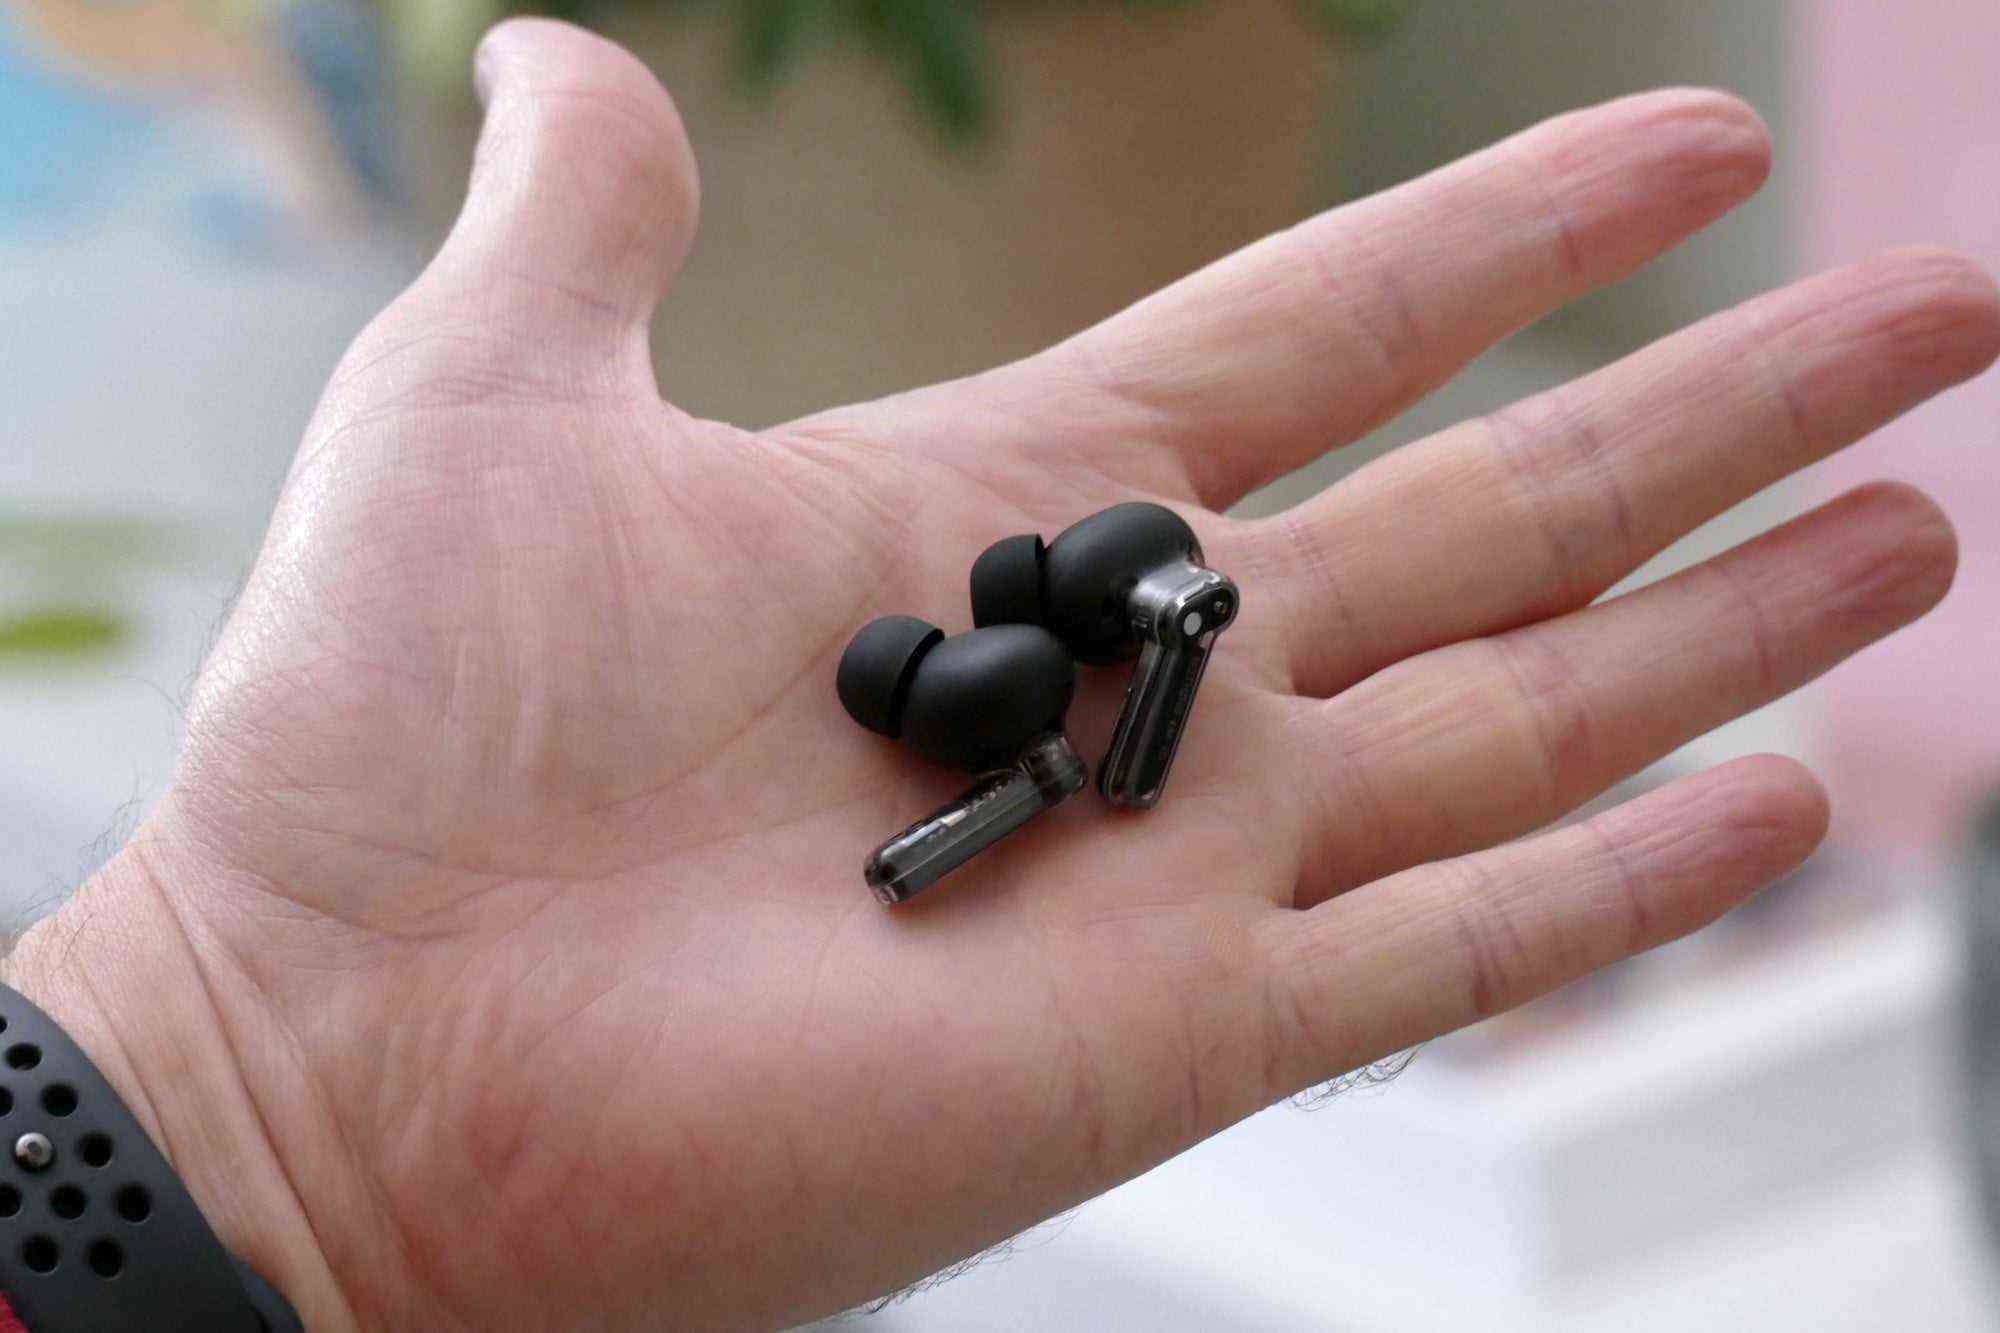 Nichts Ear 1 Black Edition-Ohrhörer in der Hand.